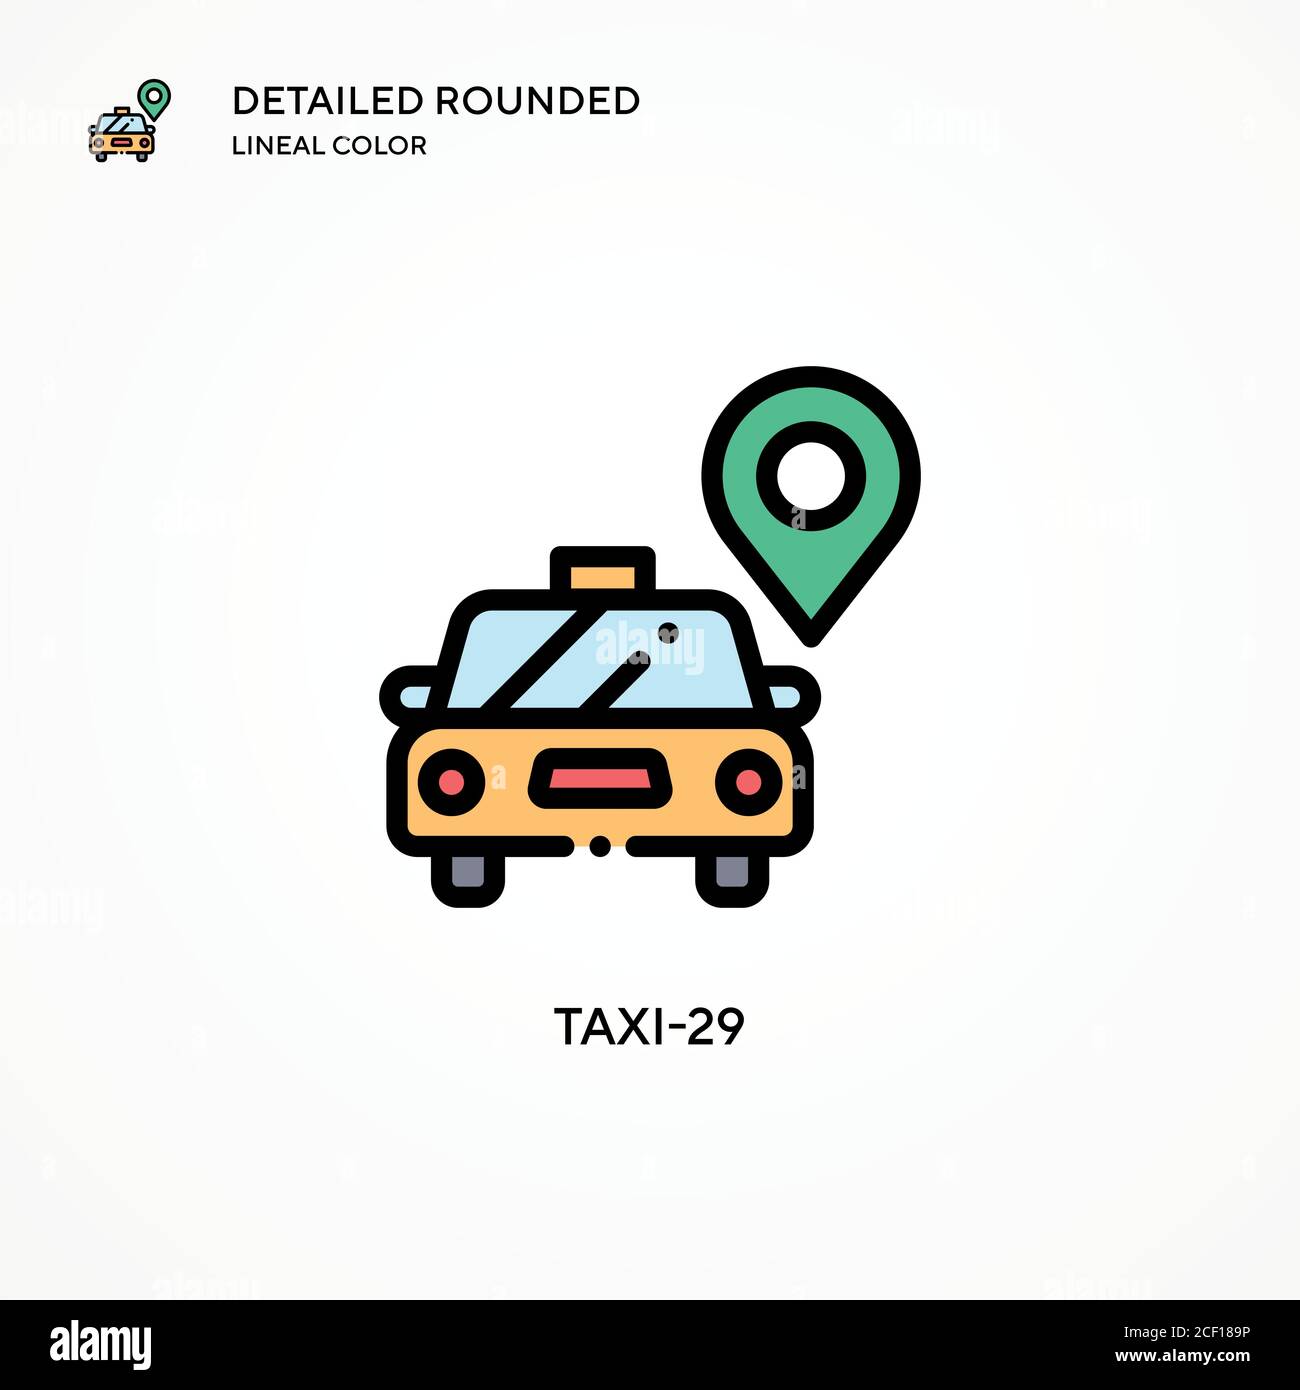 Taxi-29 Vektorsymbol. Moderne Vektorgrafik Konzepte. Einfach zu bearbeiten und anzupassen. Stock Vektor